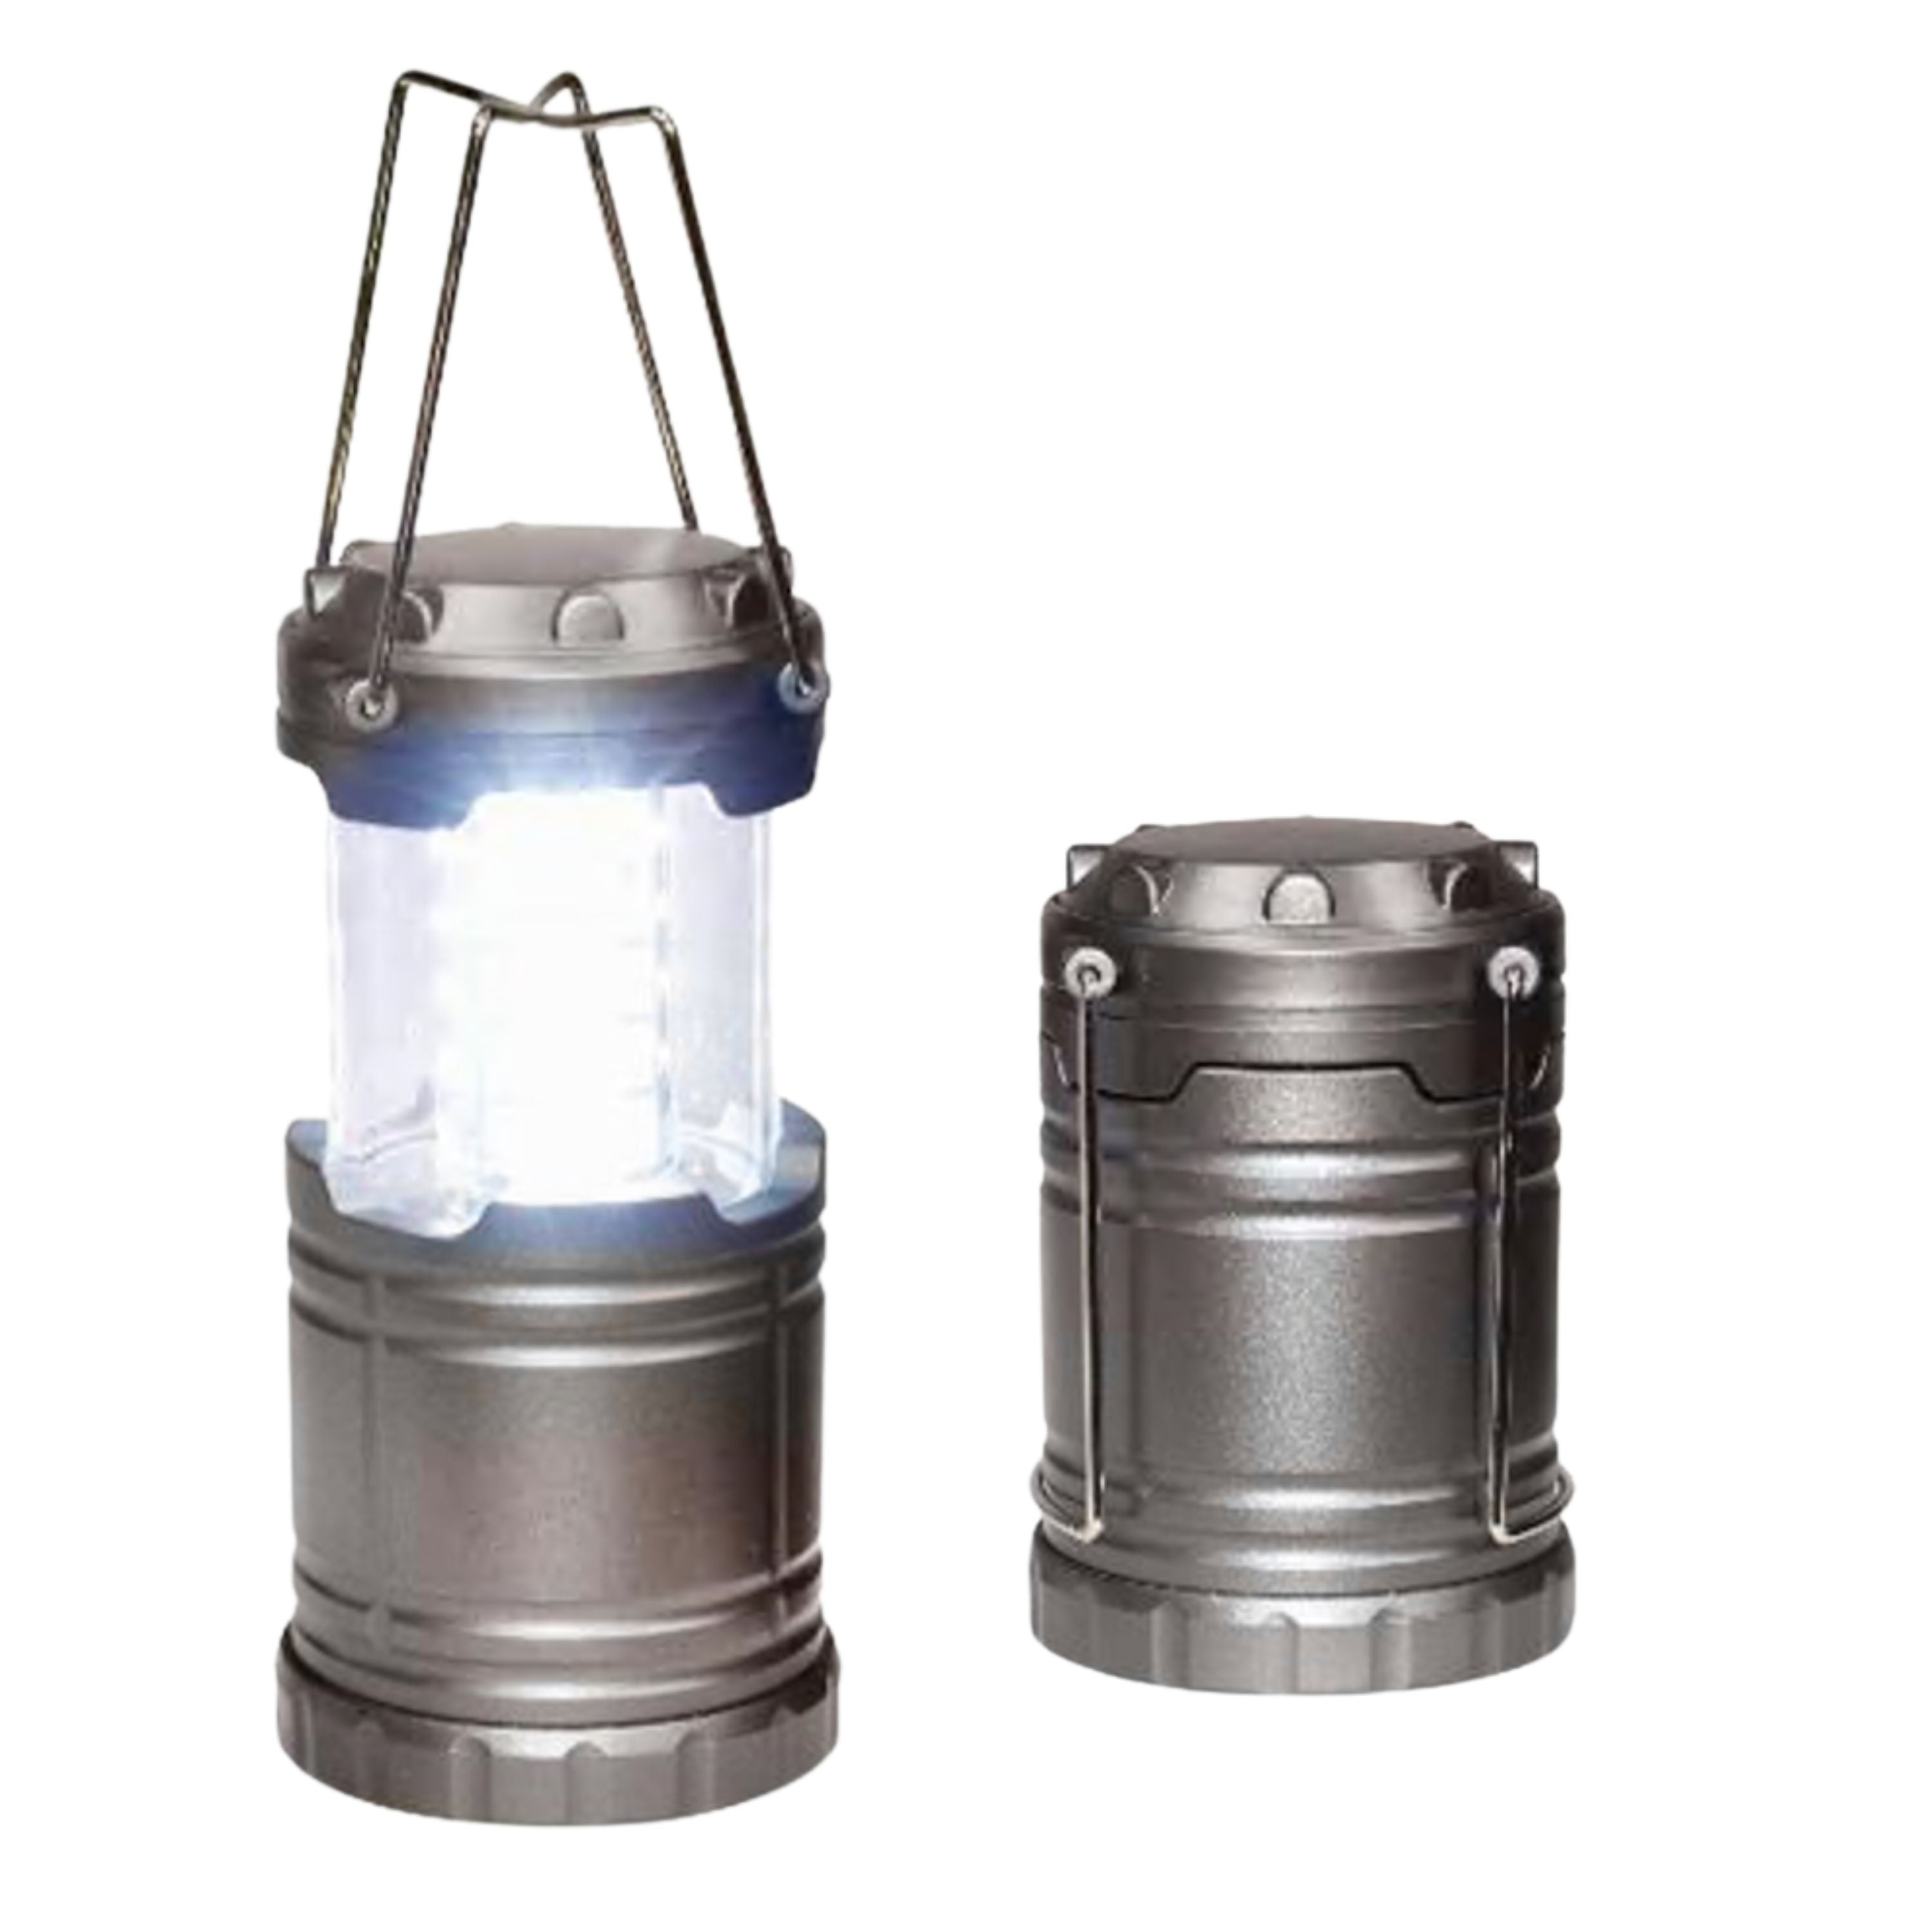 Lanterne rétractable "Tak-Lite" - 200 lumens